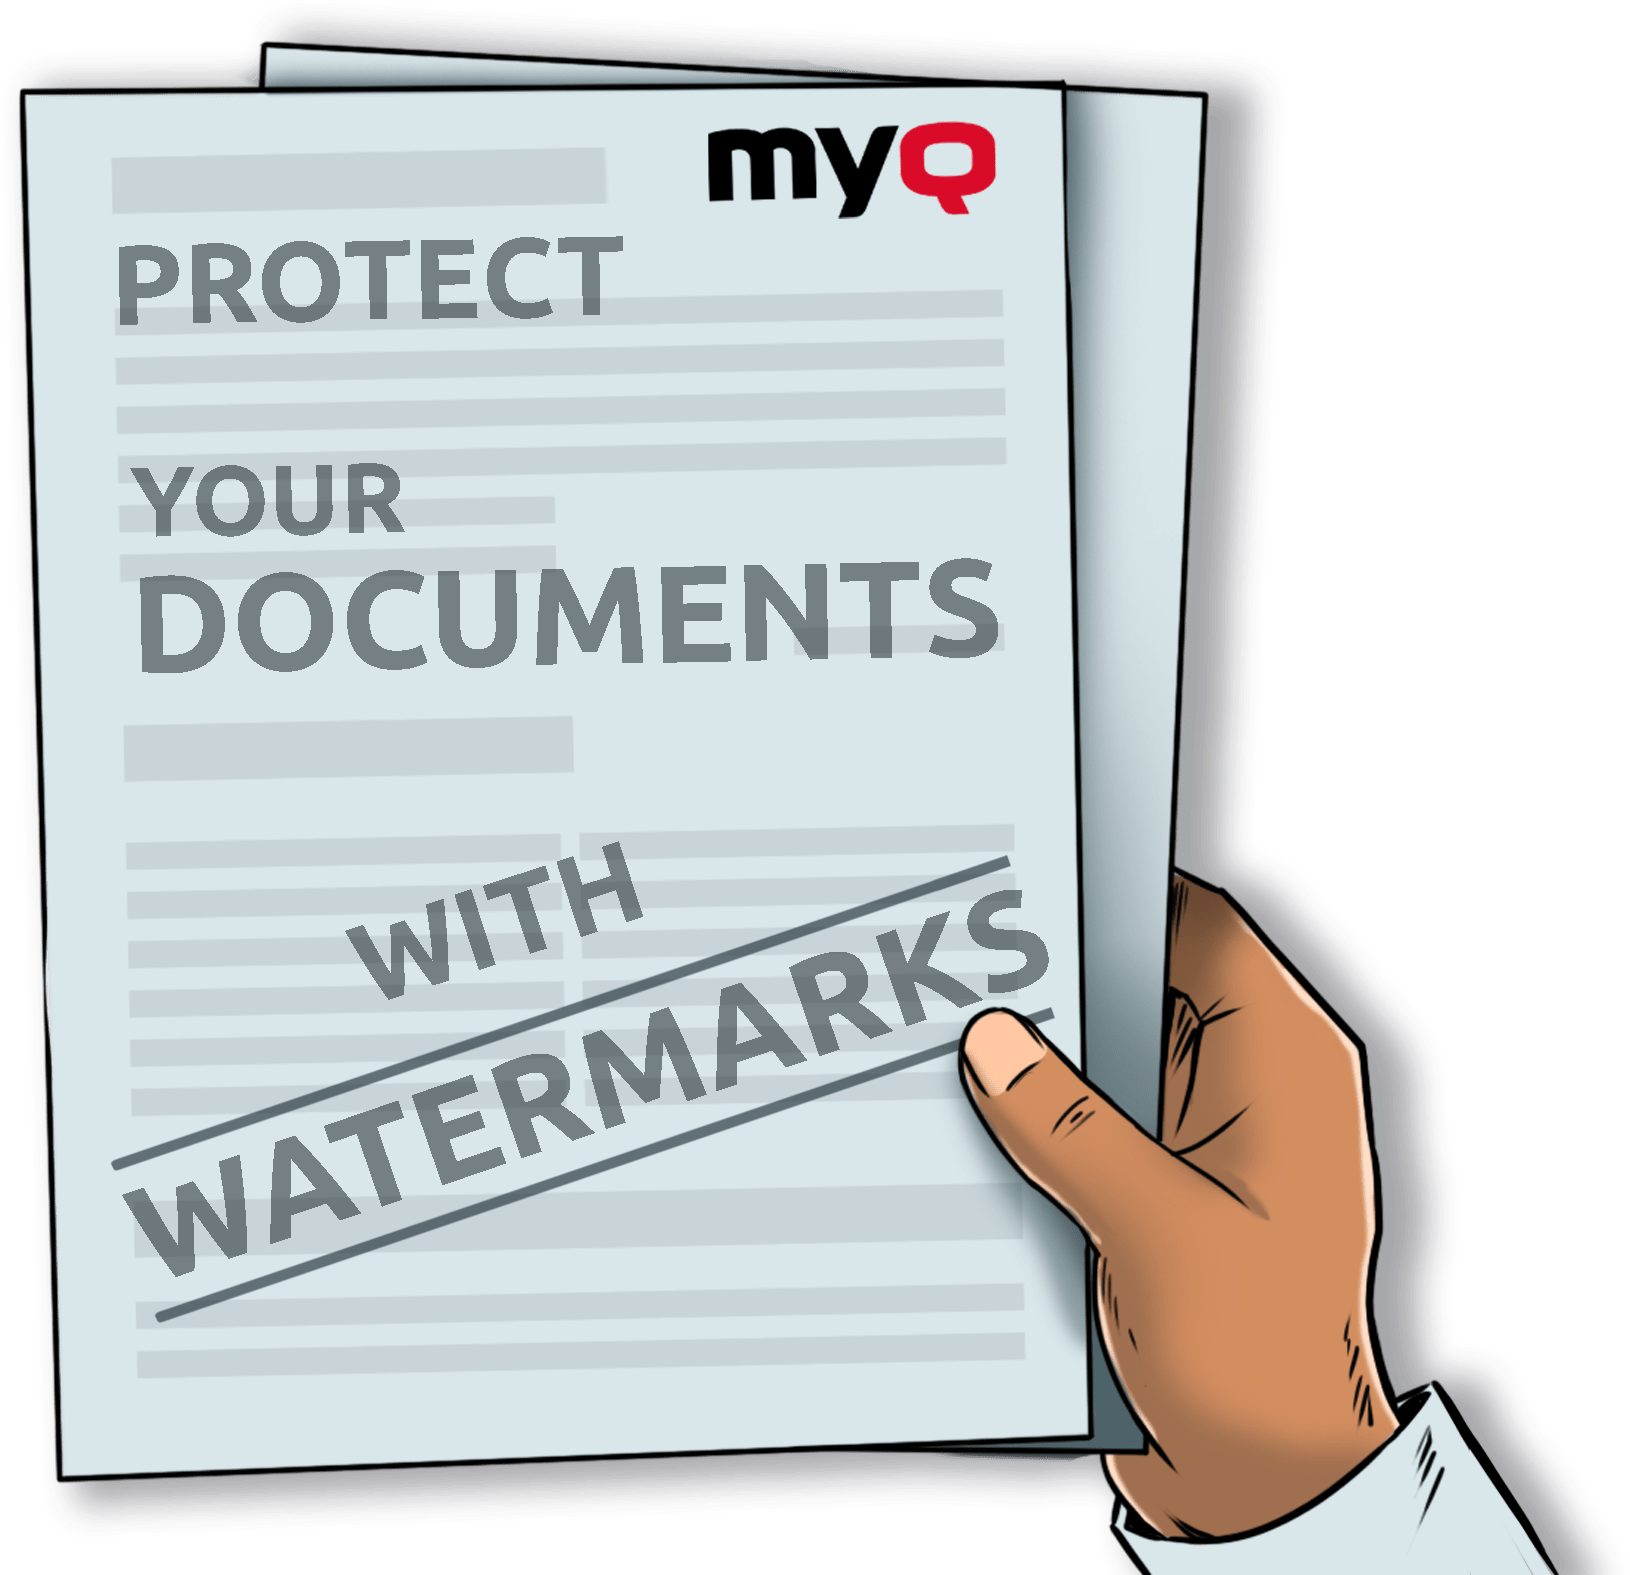 Identifique os seus documentos importantes